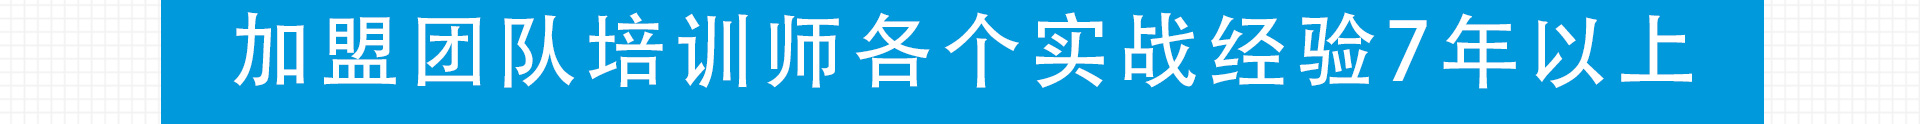 加盟网站zuizhong_156.jpg